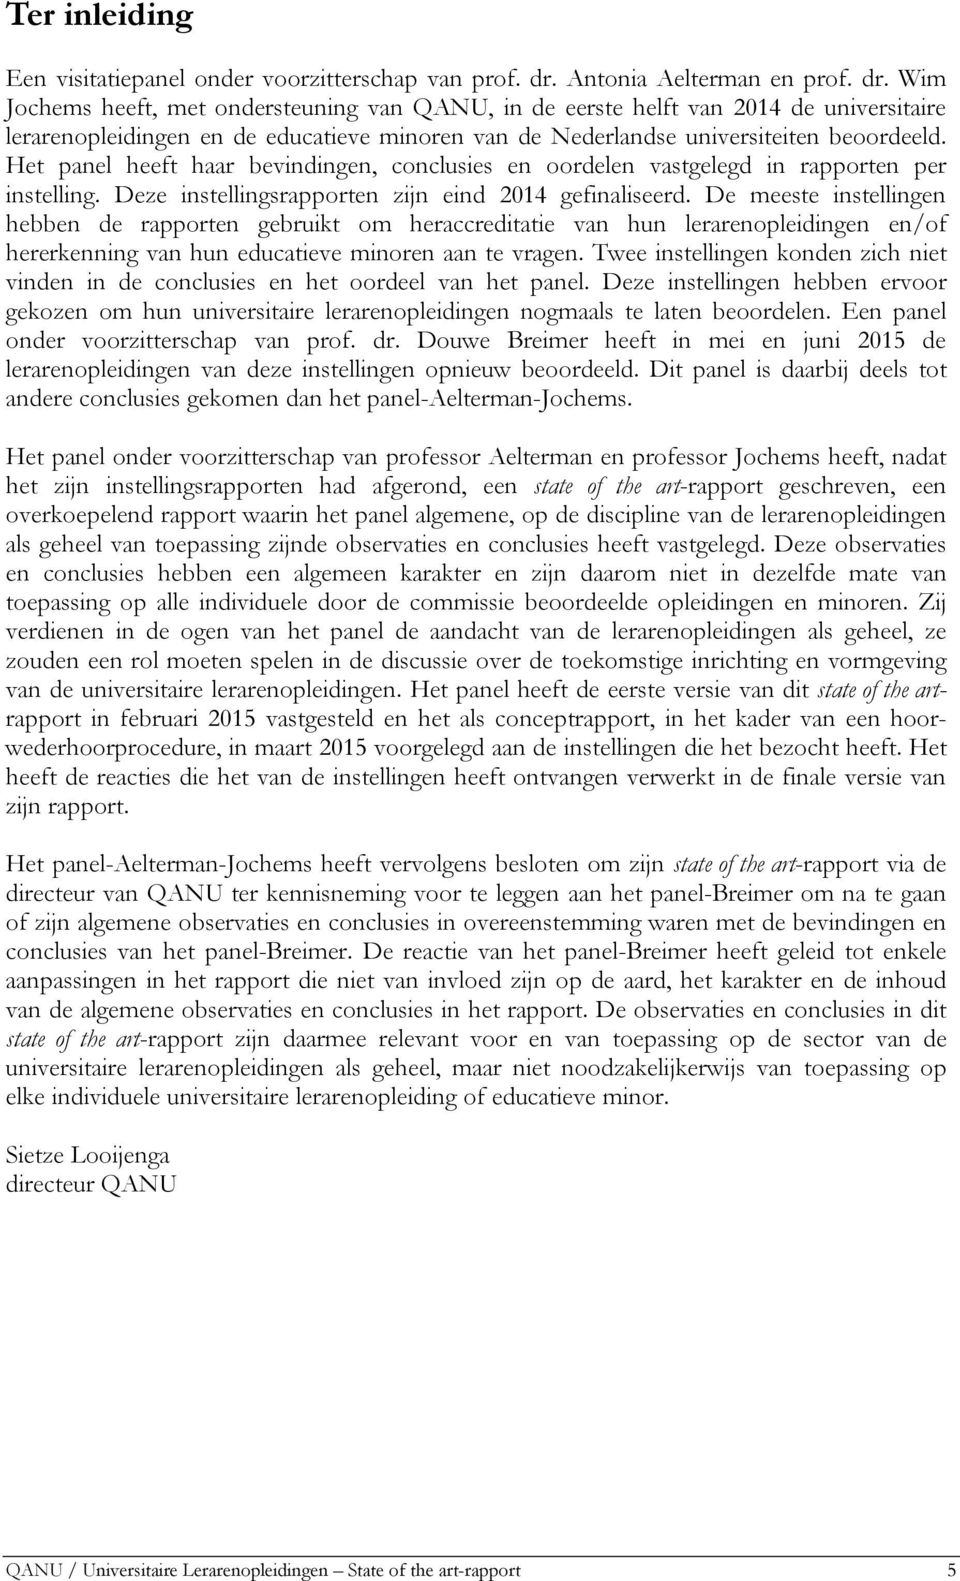 Wim Jochems heeft, met ondersteuning van QANU, in de eerste helft van 2014 de universitaire lerarenopleidingen en de educatieve minoren van de Nederlandse universiteiten beoordeeld.